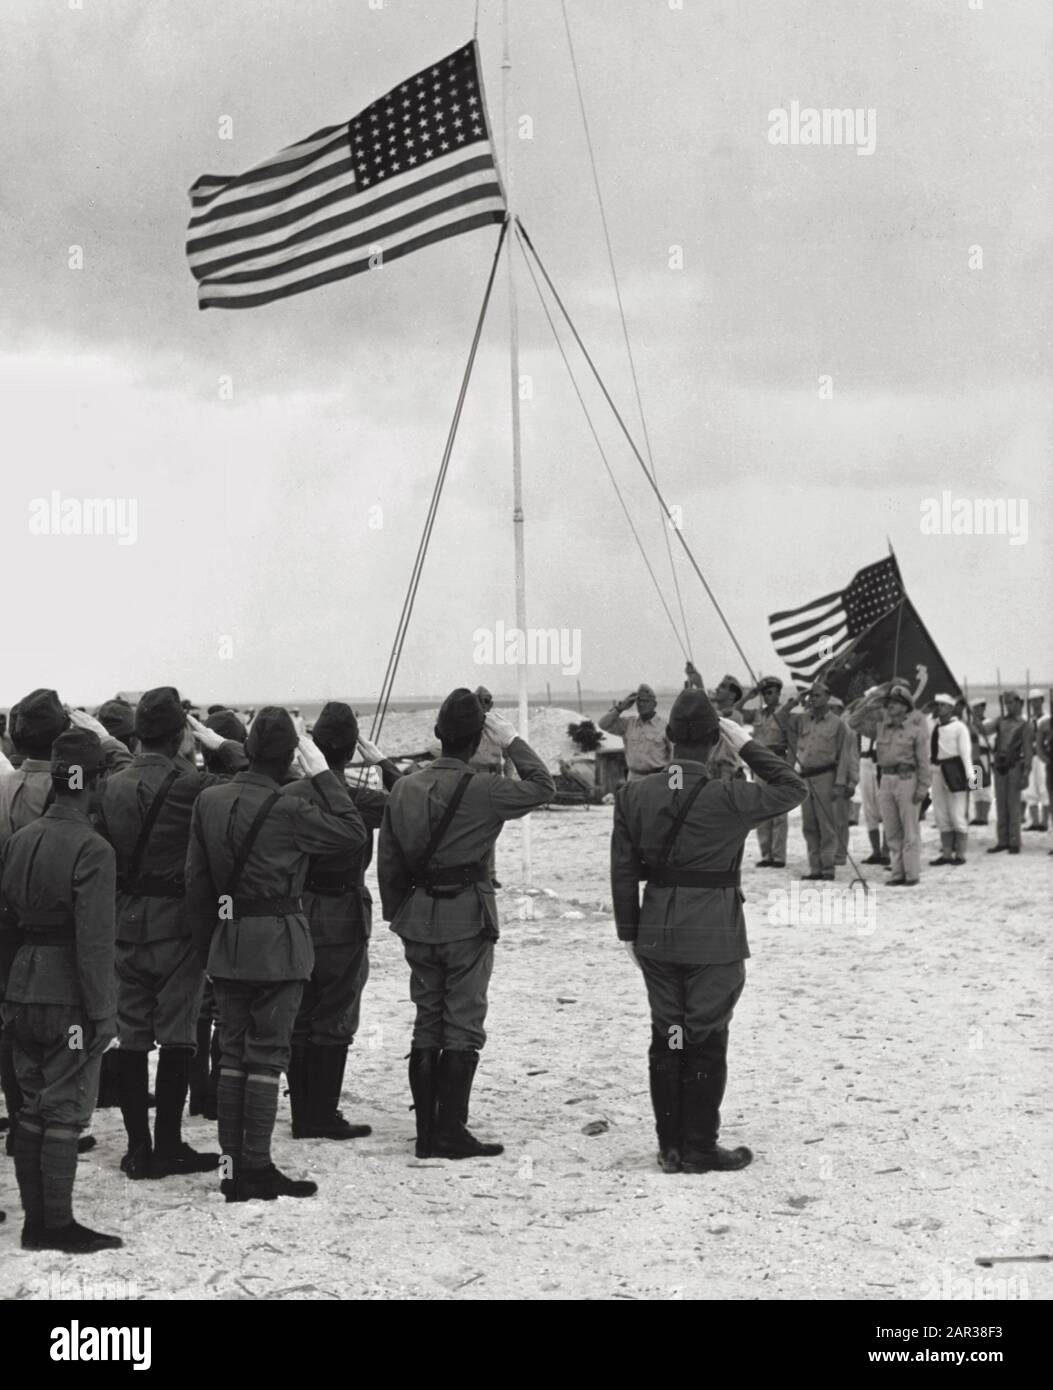 Kapitulation des Wake Atolls, 4. September 1945: Die US-Flagge über Wake Island anheben am 4. September 1945, da ein US Marine Corps Bugler "Farben" spielt. Dies war das erste Mal, dass die Stars and Stripes Wake seit ihrer Einnahme durch die Japaner am 23. Dezember 1941 überflogen hatten. Der Offizier, der im rechten Vordergrund steht, ist Rear Admiral Shigematsu Sakaibara, japanischer Befehlshaber auf der Wake. Zu den Farben, die von der US-Partei getragen werden, gehört der rechte Hintergrund, die Flagge des US Marine Corps. Stockfoto